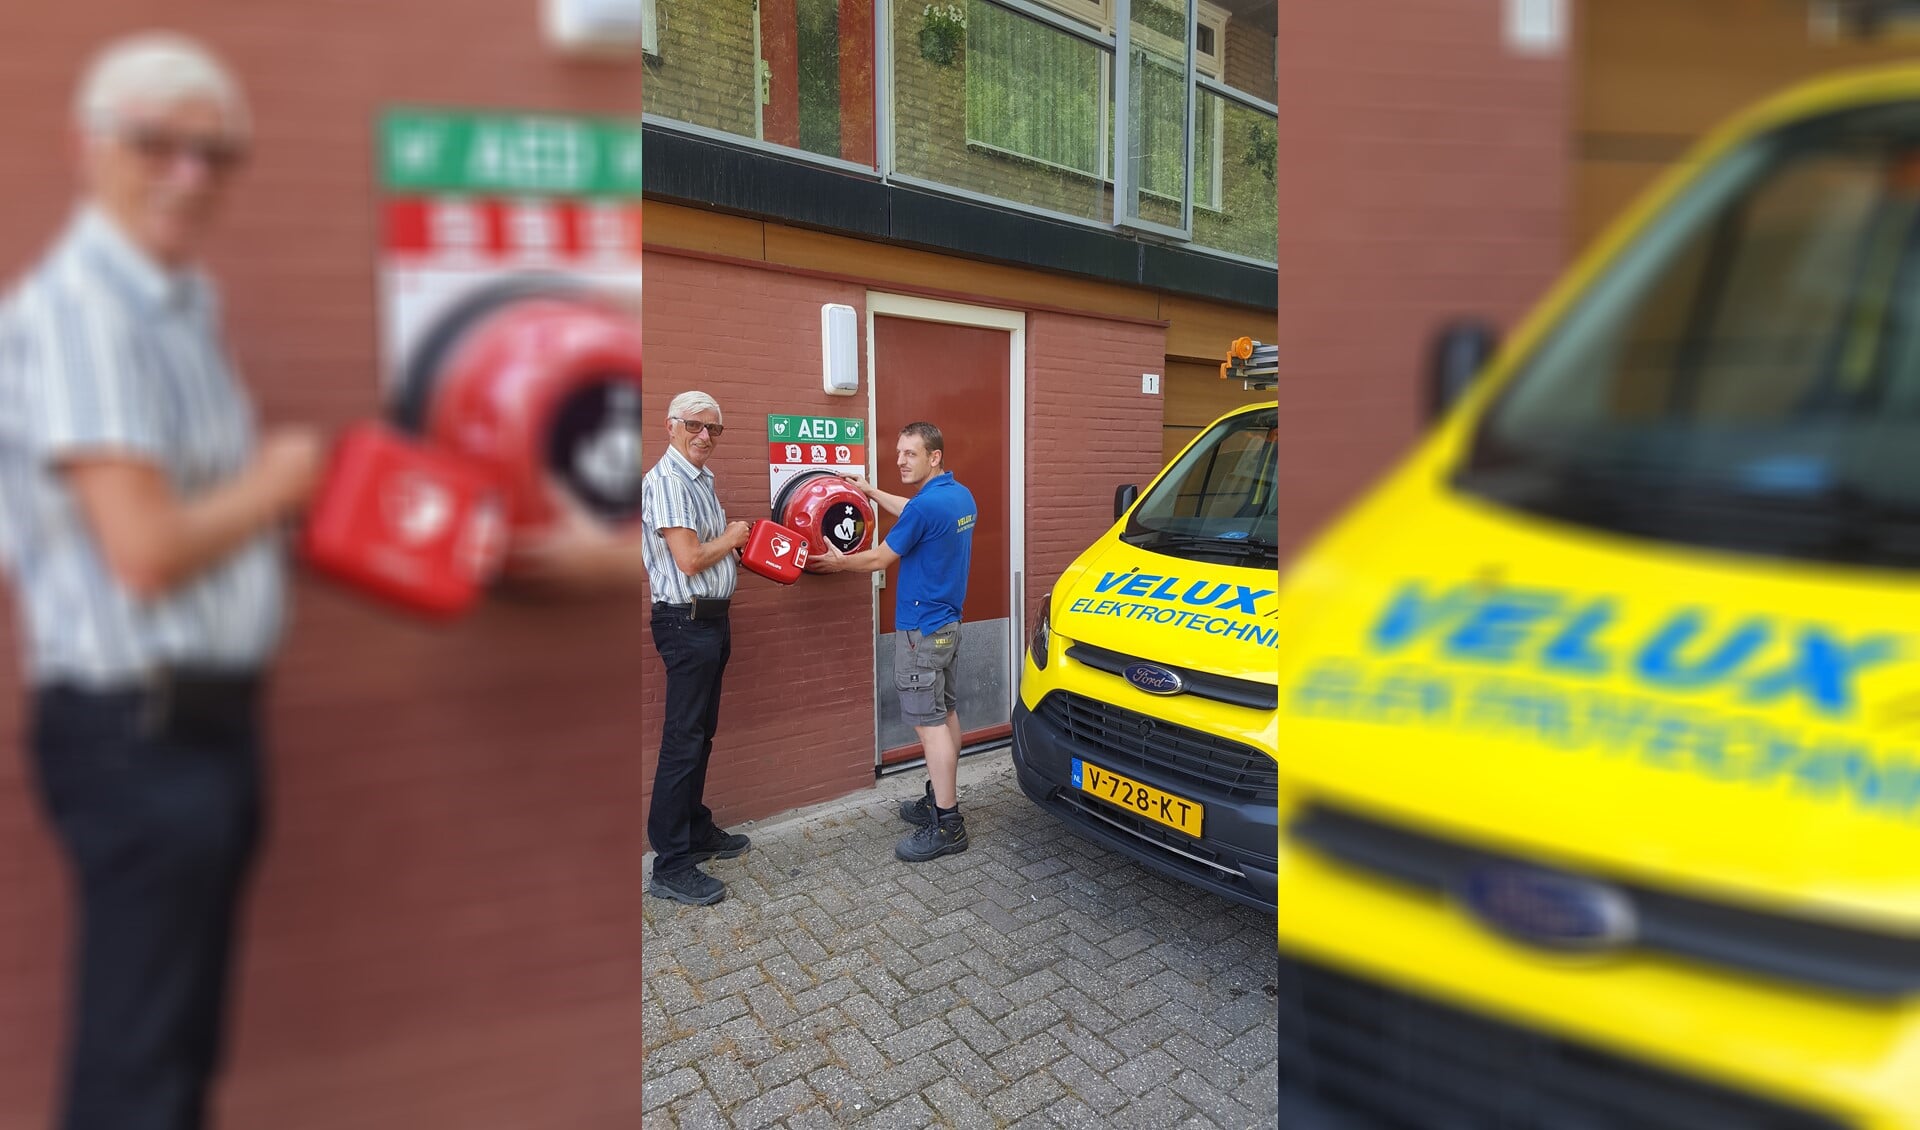 Op de foto overhandigt Cees van der Ende namens St. Evenementen EHBO Pijnacker de AED buitenkast aan Kasper van Velux Elektrotechniek, die net de kast heeft opgehangen.